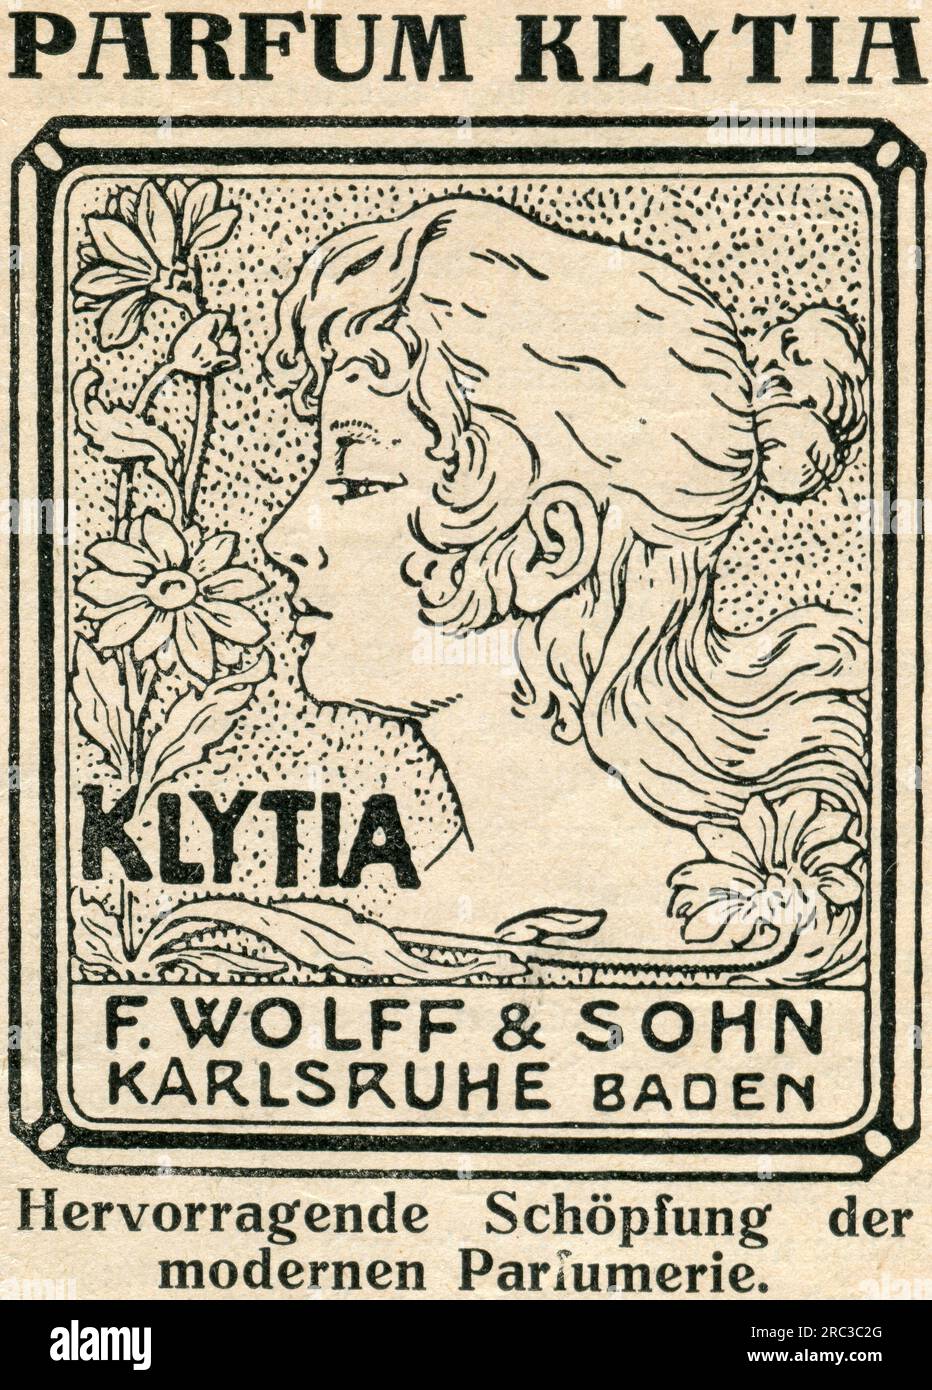 Publicité, parfum Klytia, F. Wolff und Sohn, Baden, publicité, 'Zeit im Bildd', 1913, INFORMATIONS-AUTORISATION-DROITS-SUPPLÉMENTAIRES-NON-DISPONIBLES Banque D'Images